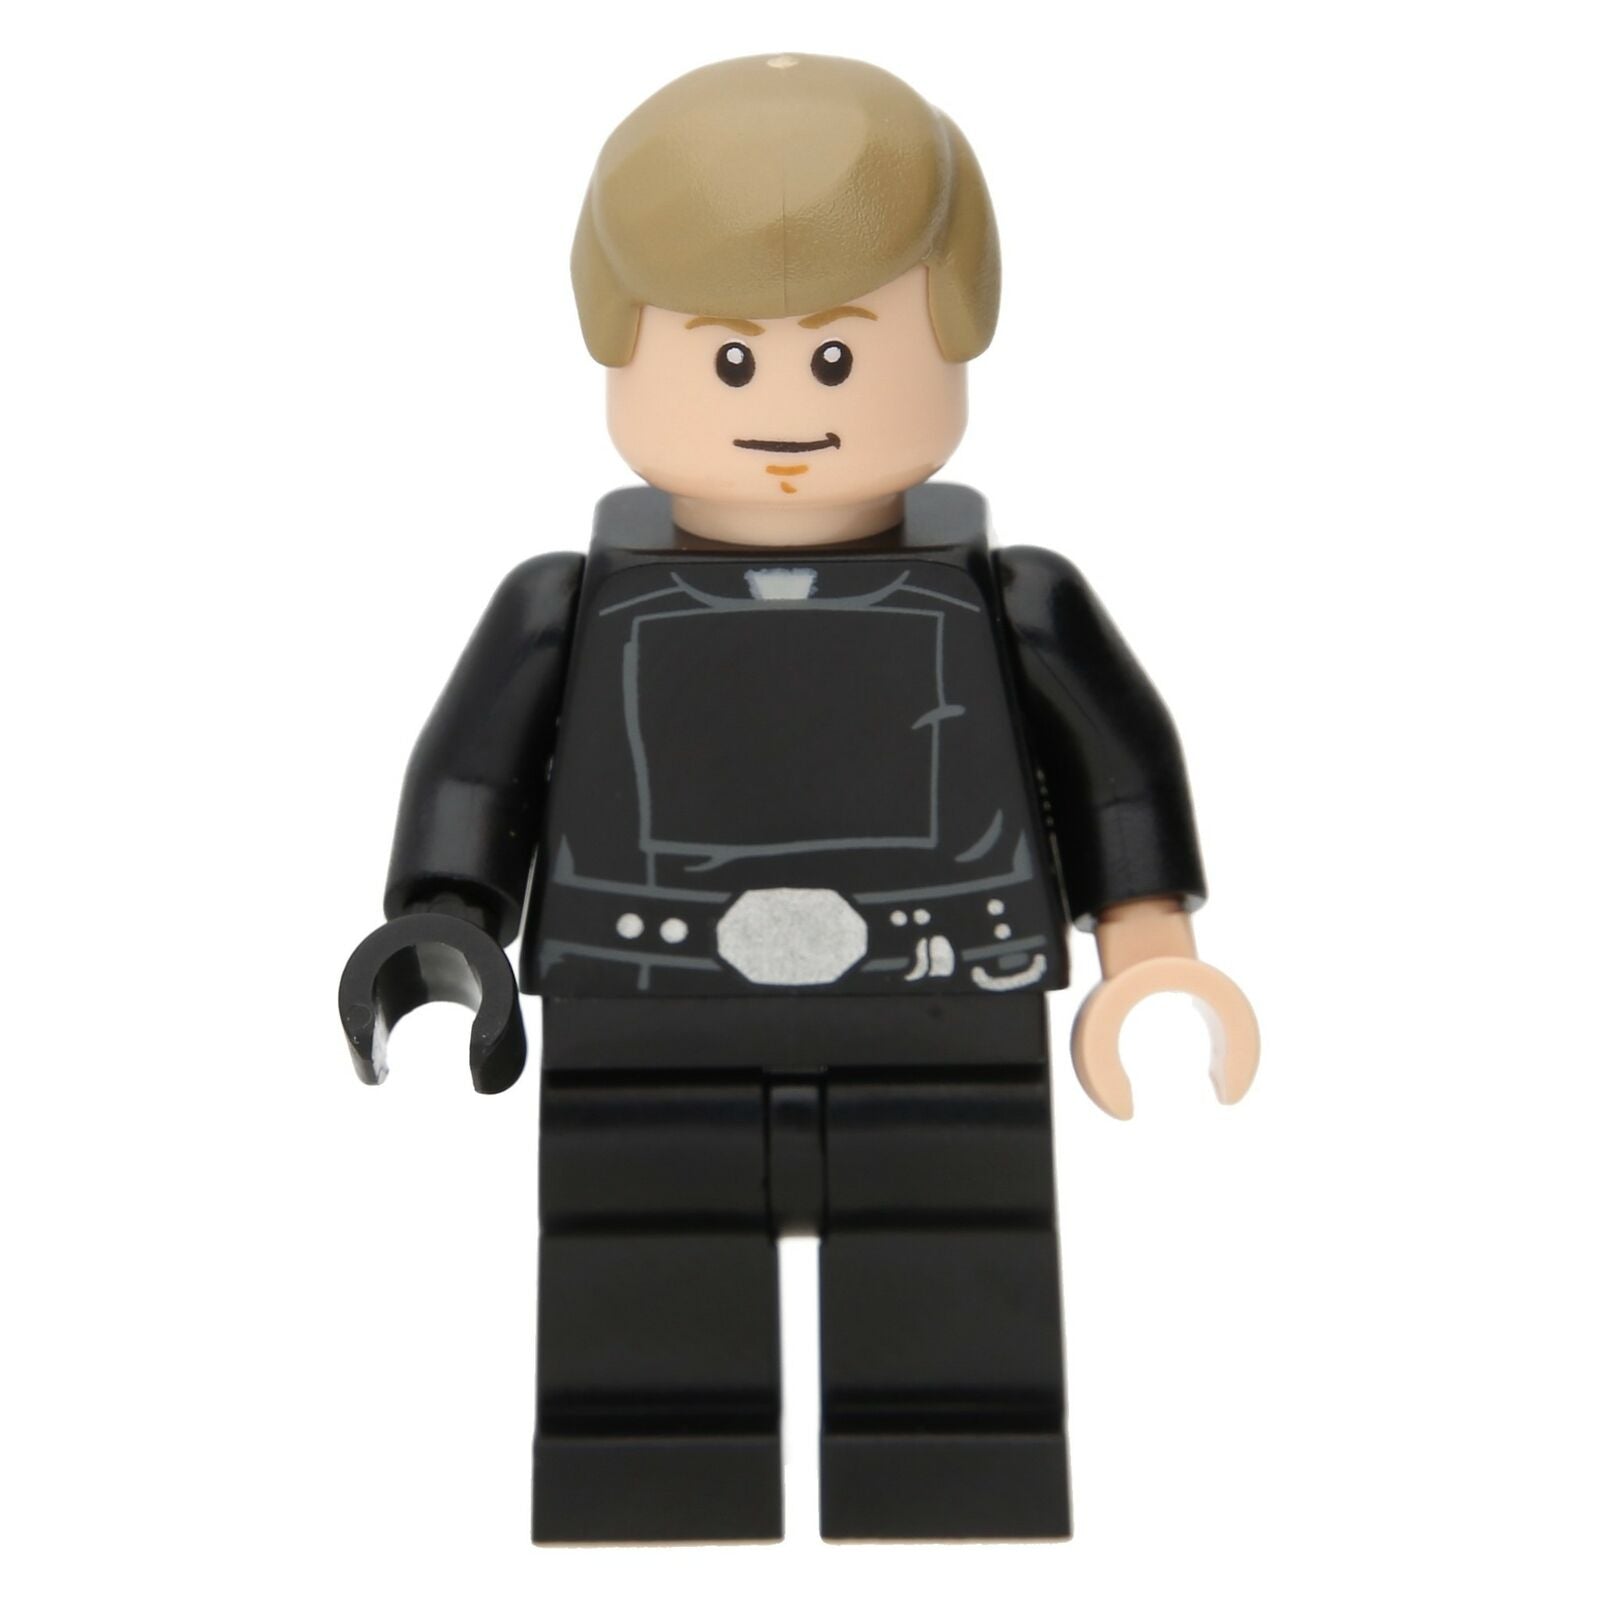 LEGO Star Wars Minifigure - Luke Skywalker (Jedi Master)